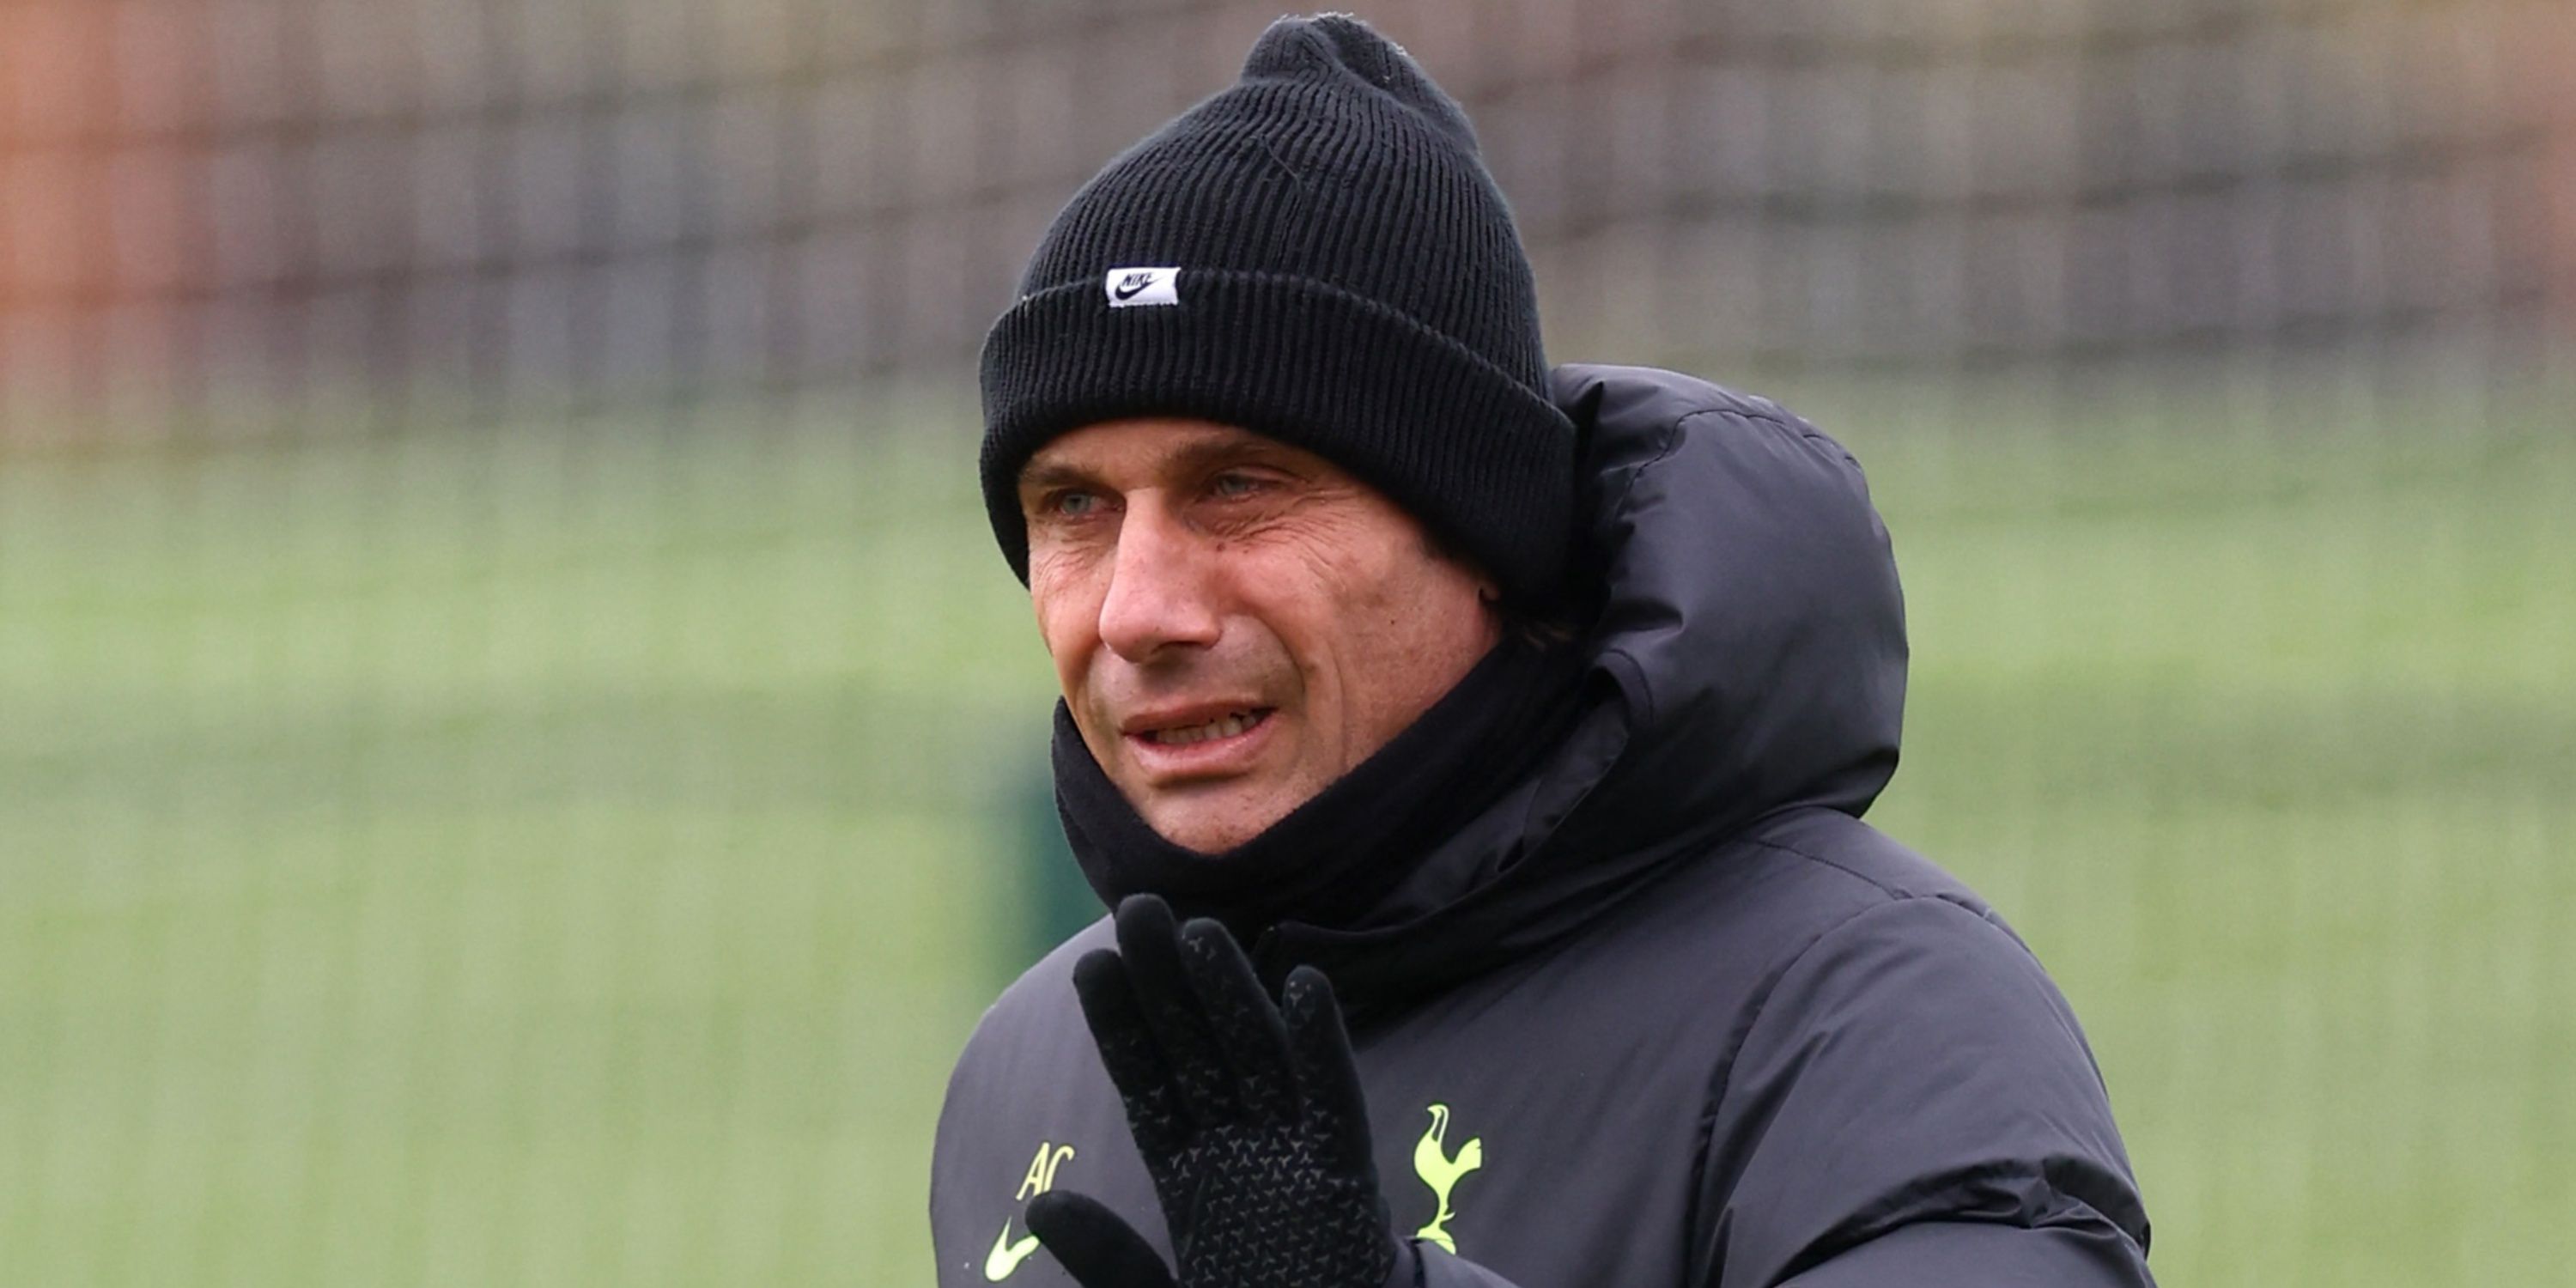 Former Tottenham Hotspur manager Antonio Conte